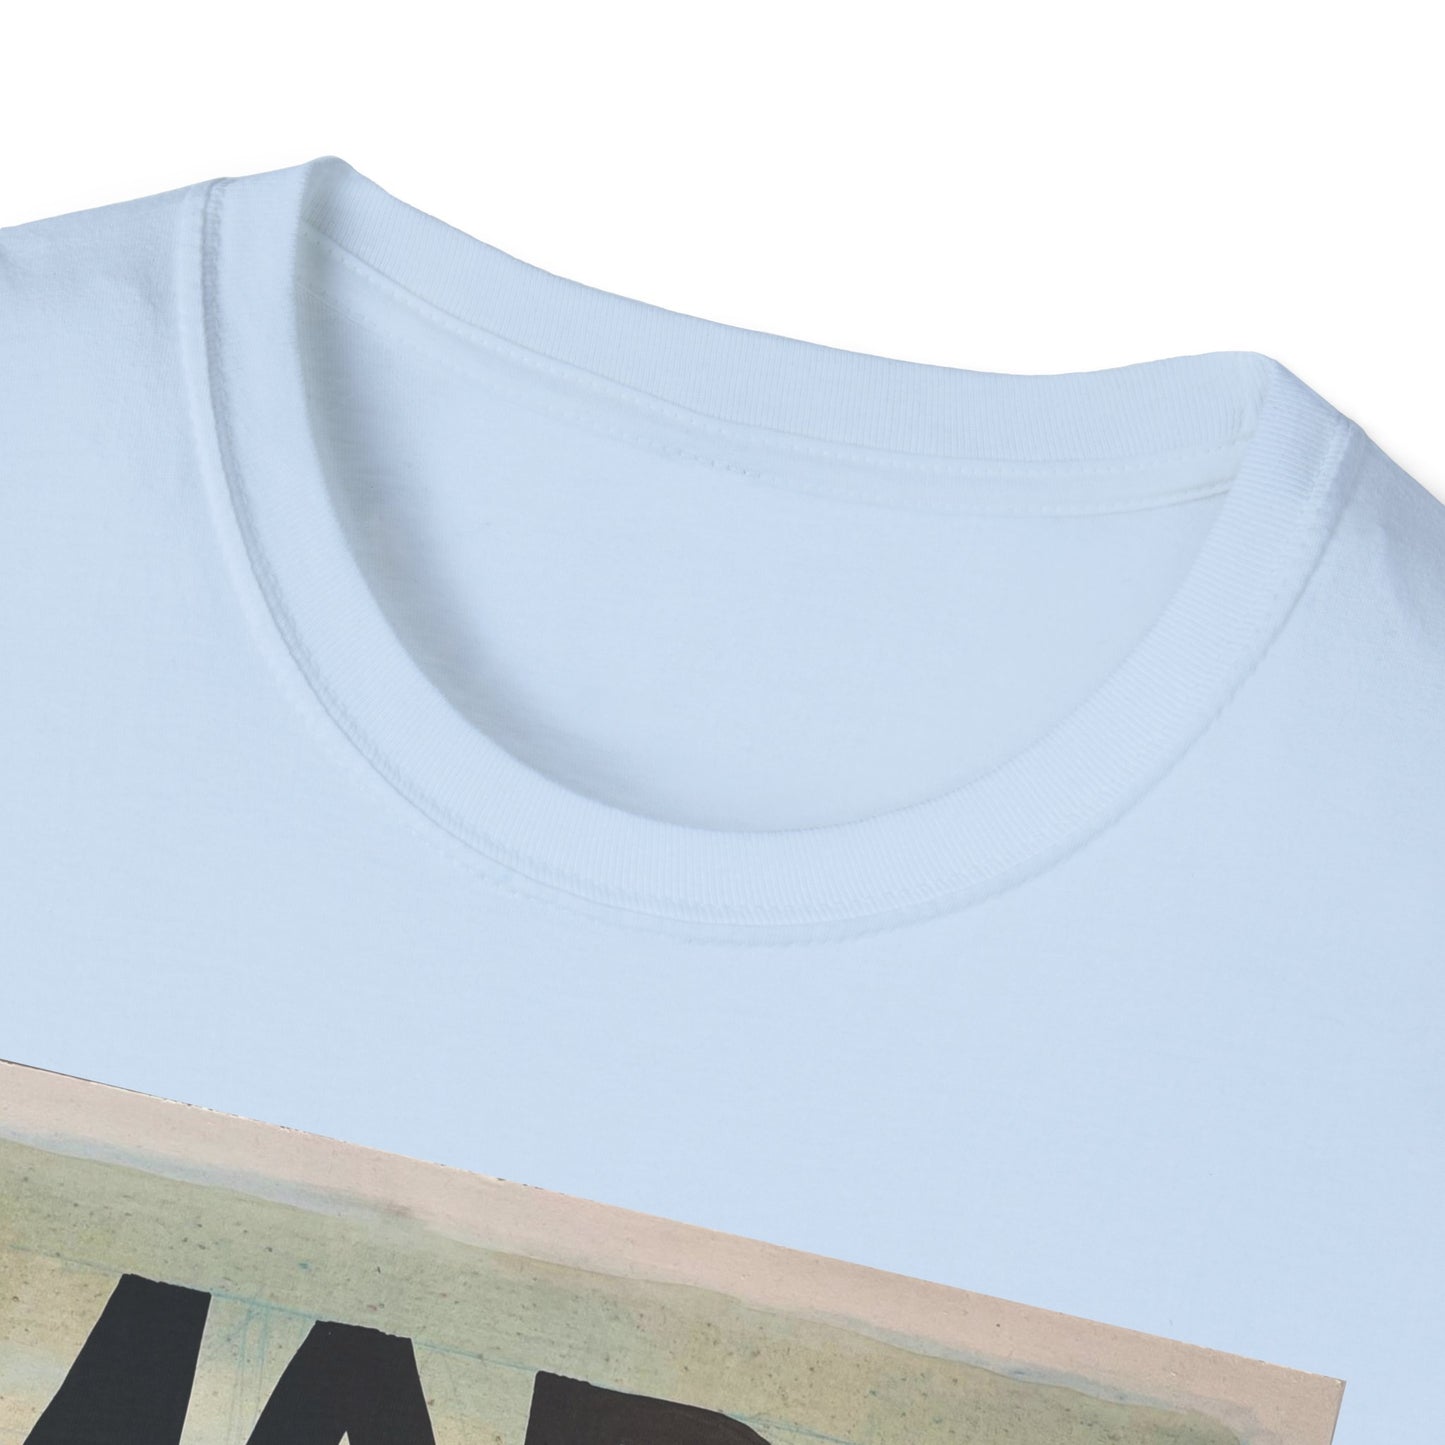 Mars Needs You Unisex Softstyle T-Shirt